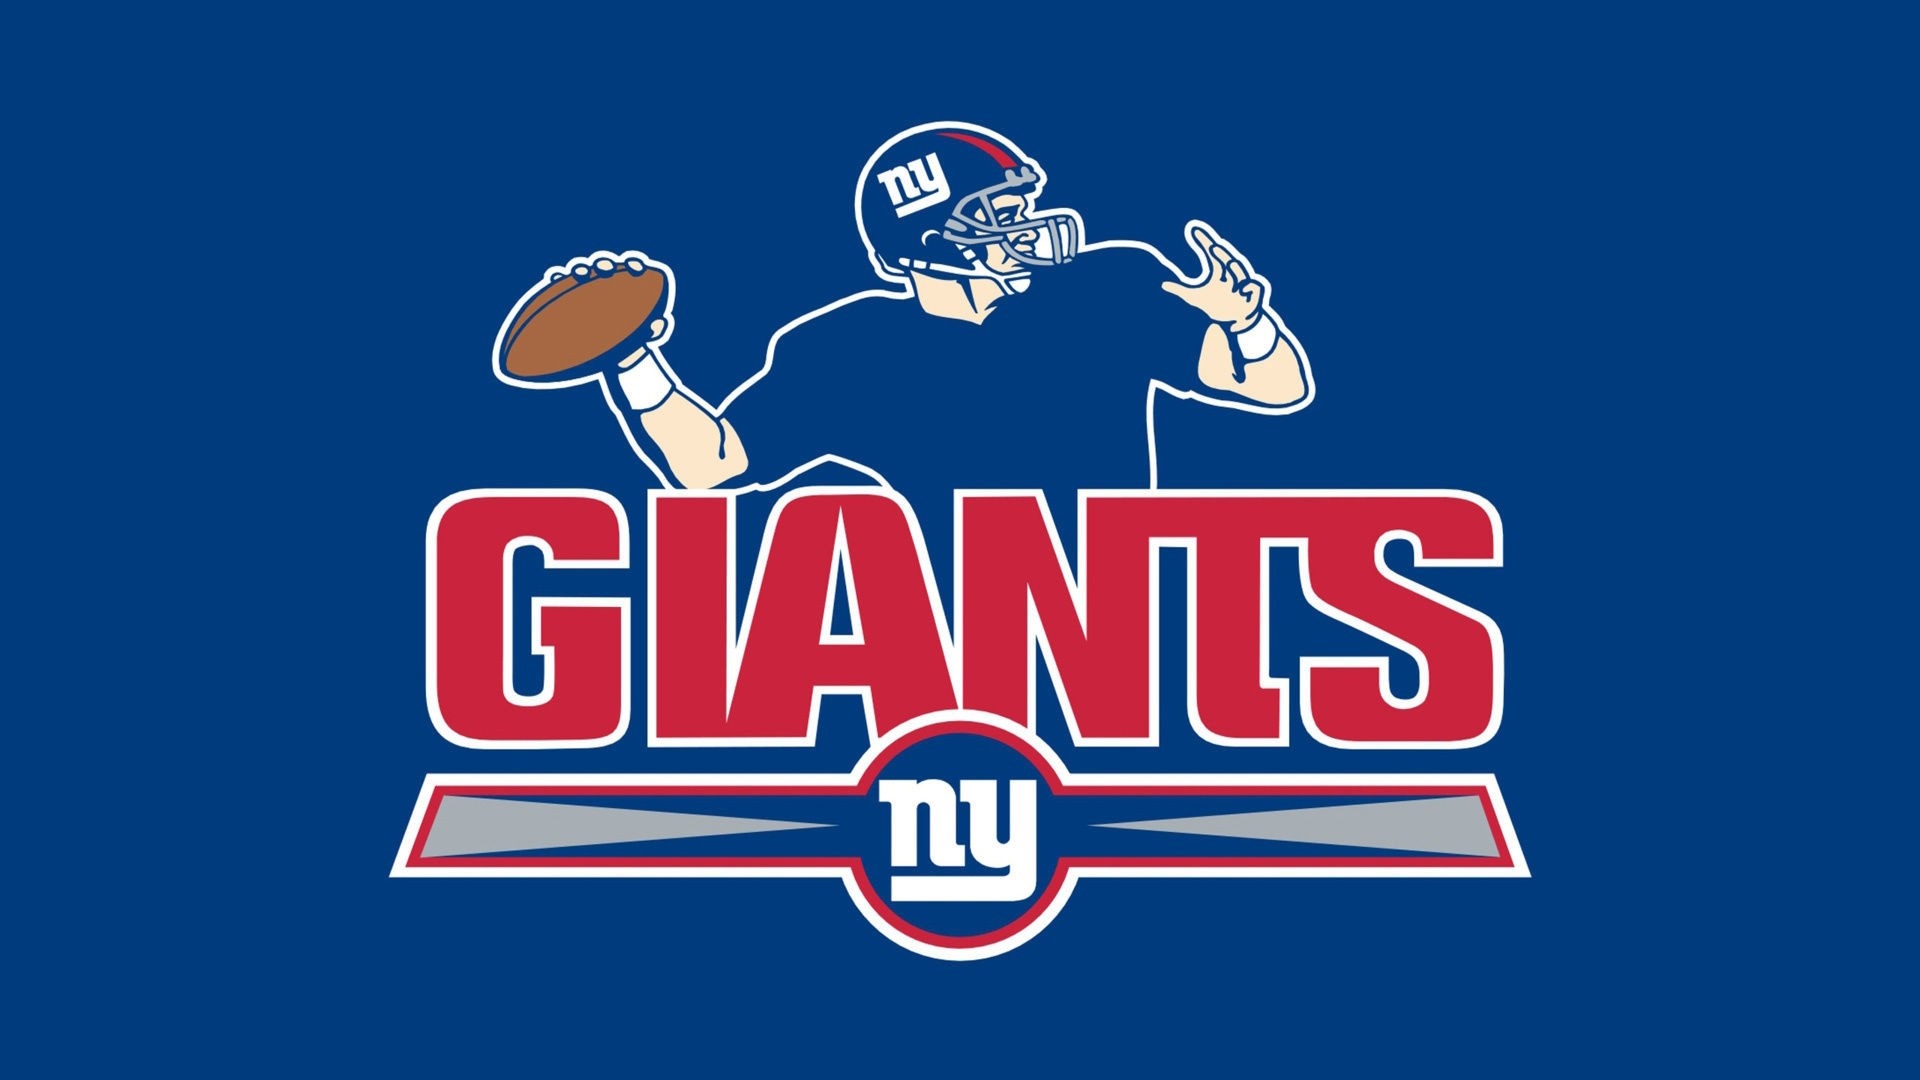 New York Giants Wallpaper For Mac